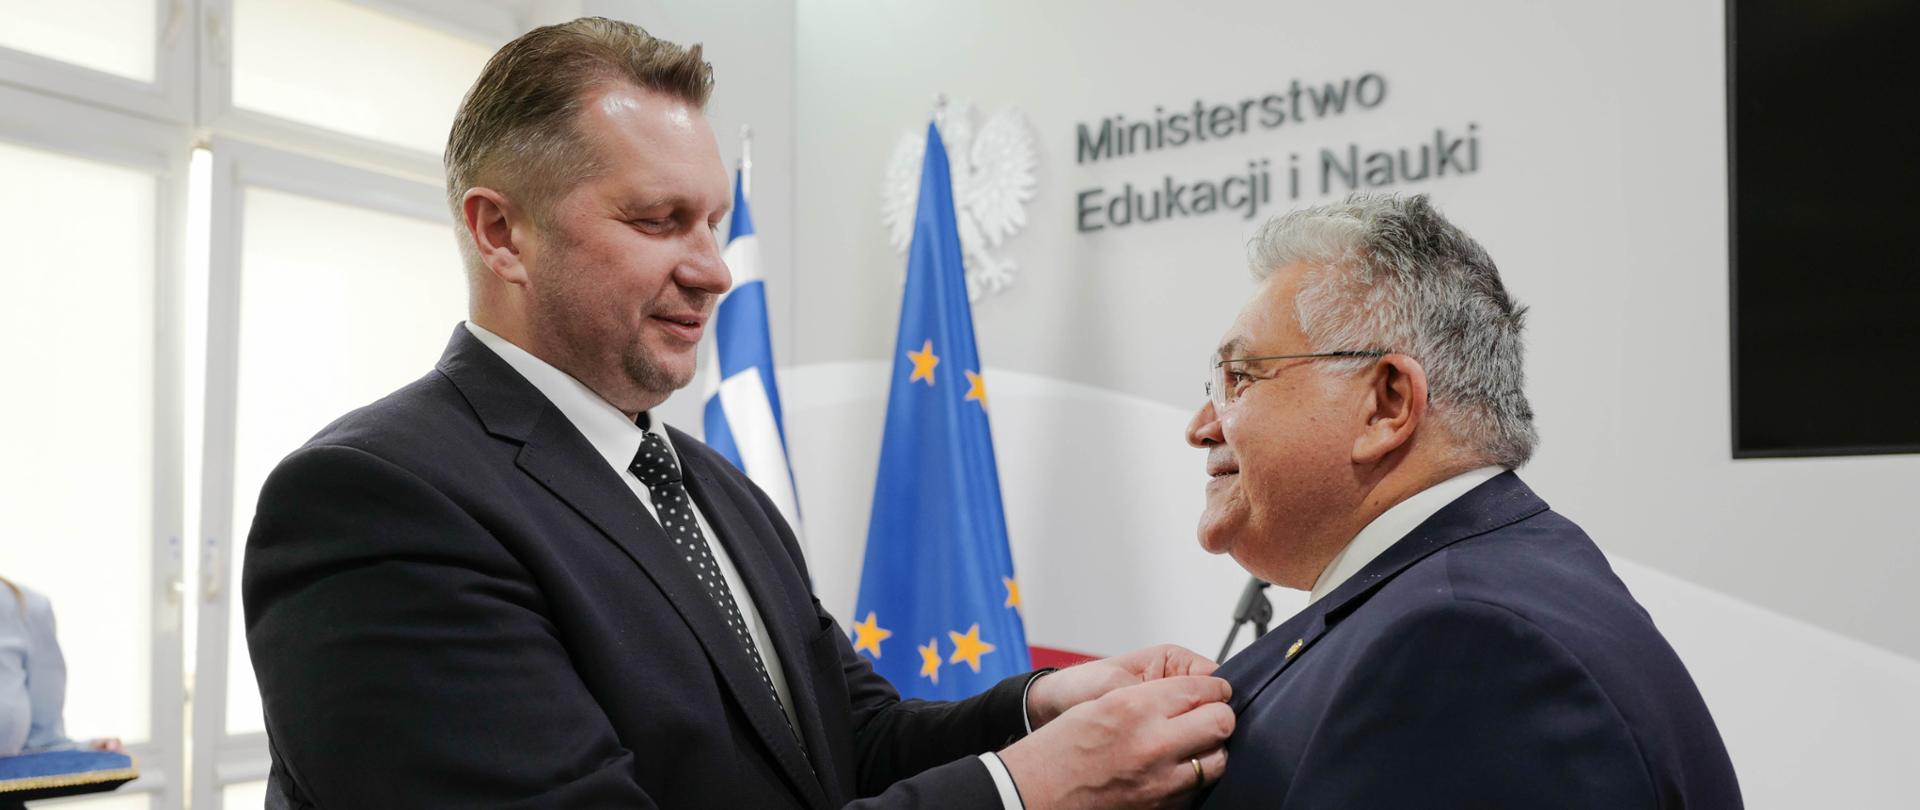 Minister Przemysław Czarnek wręcza odznaczenie profesorowi Nikolaosowi Papaioamou